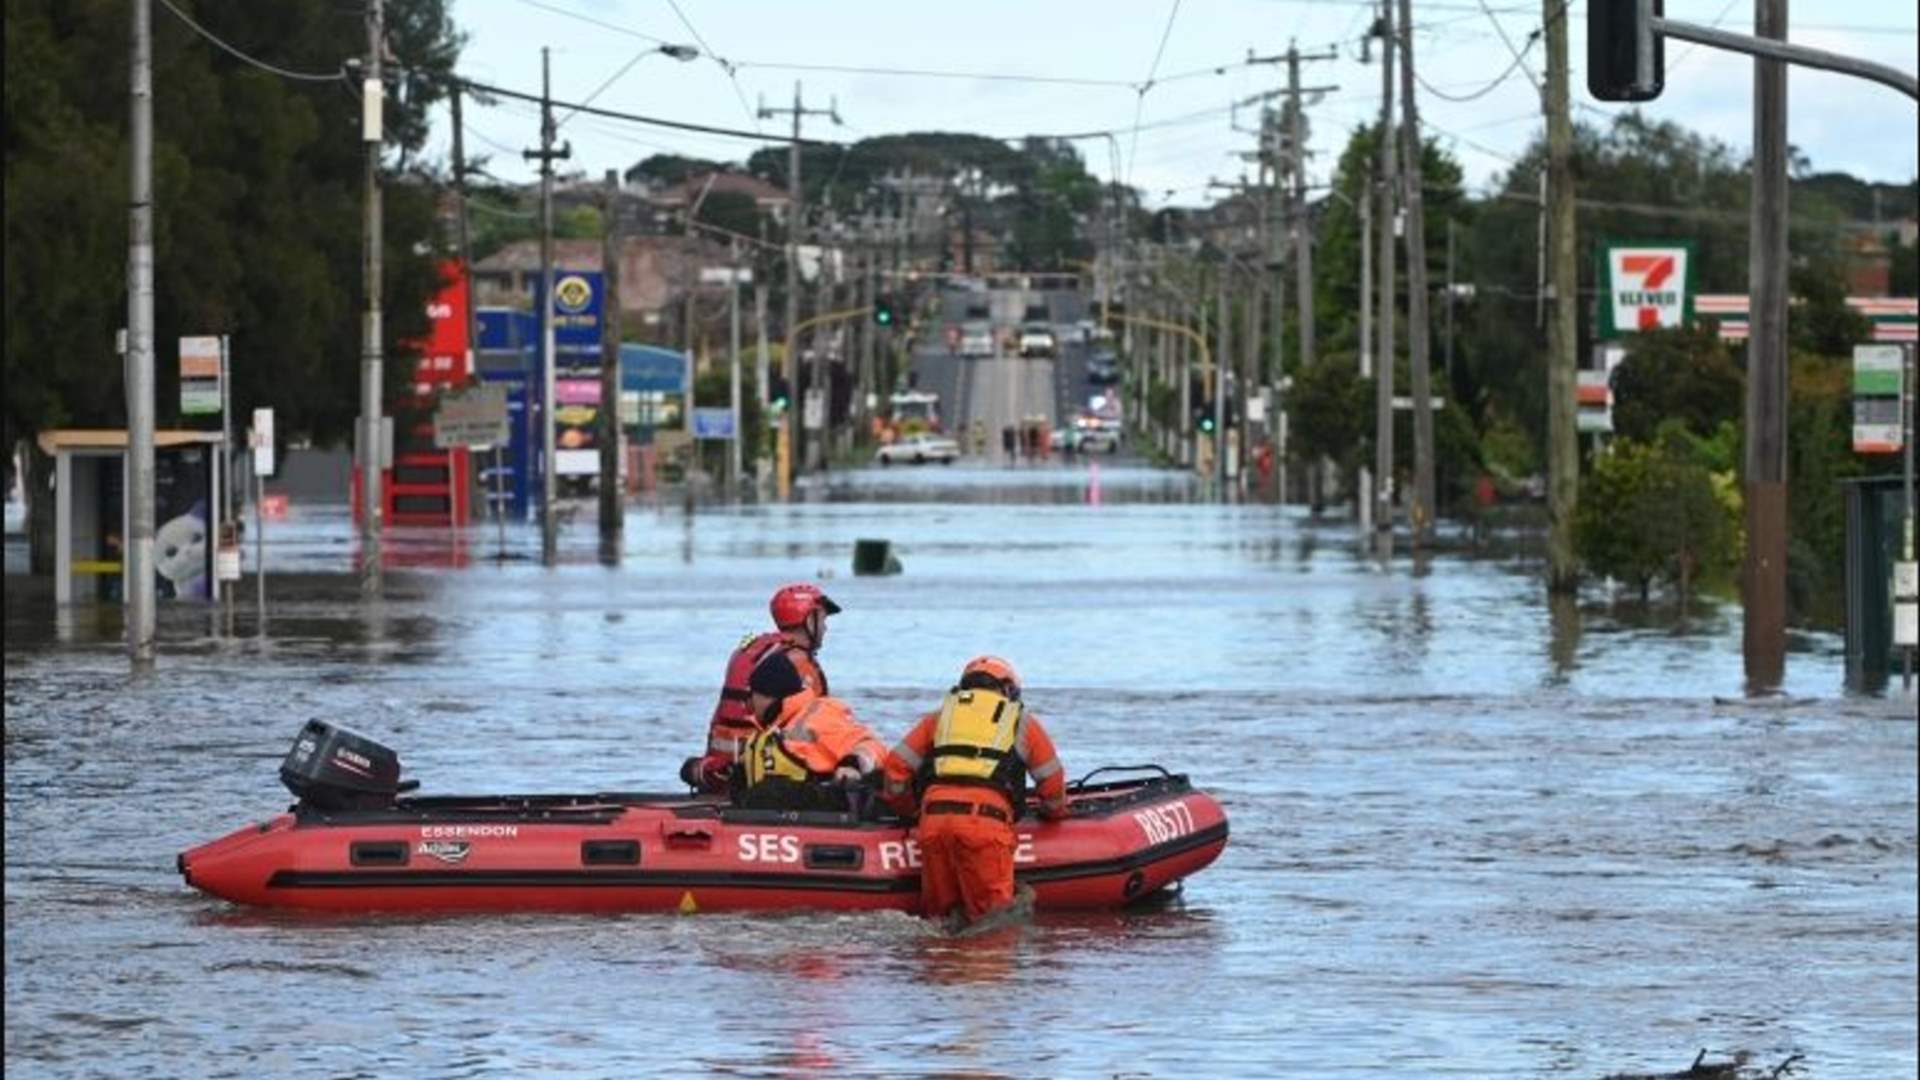 فيضانات وعمليات إنقاذ جراء أمطار غزيرة شرق أستراليا